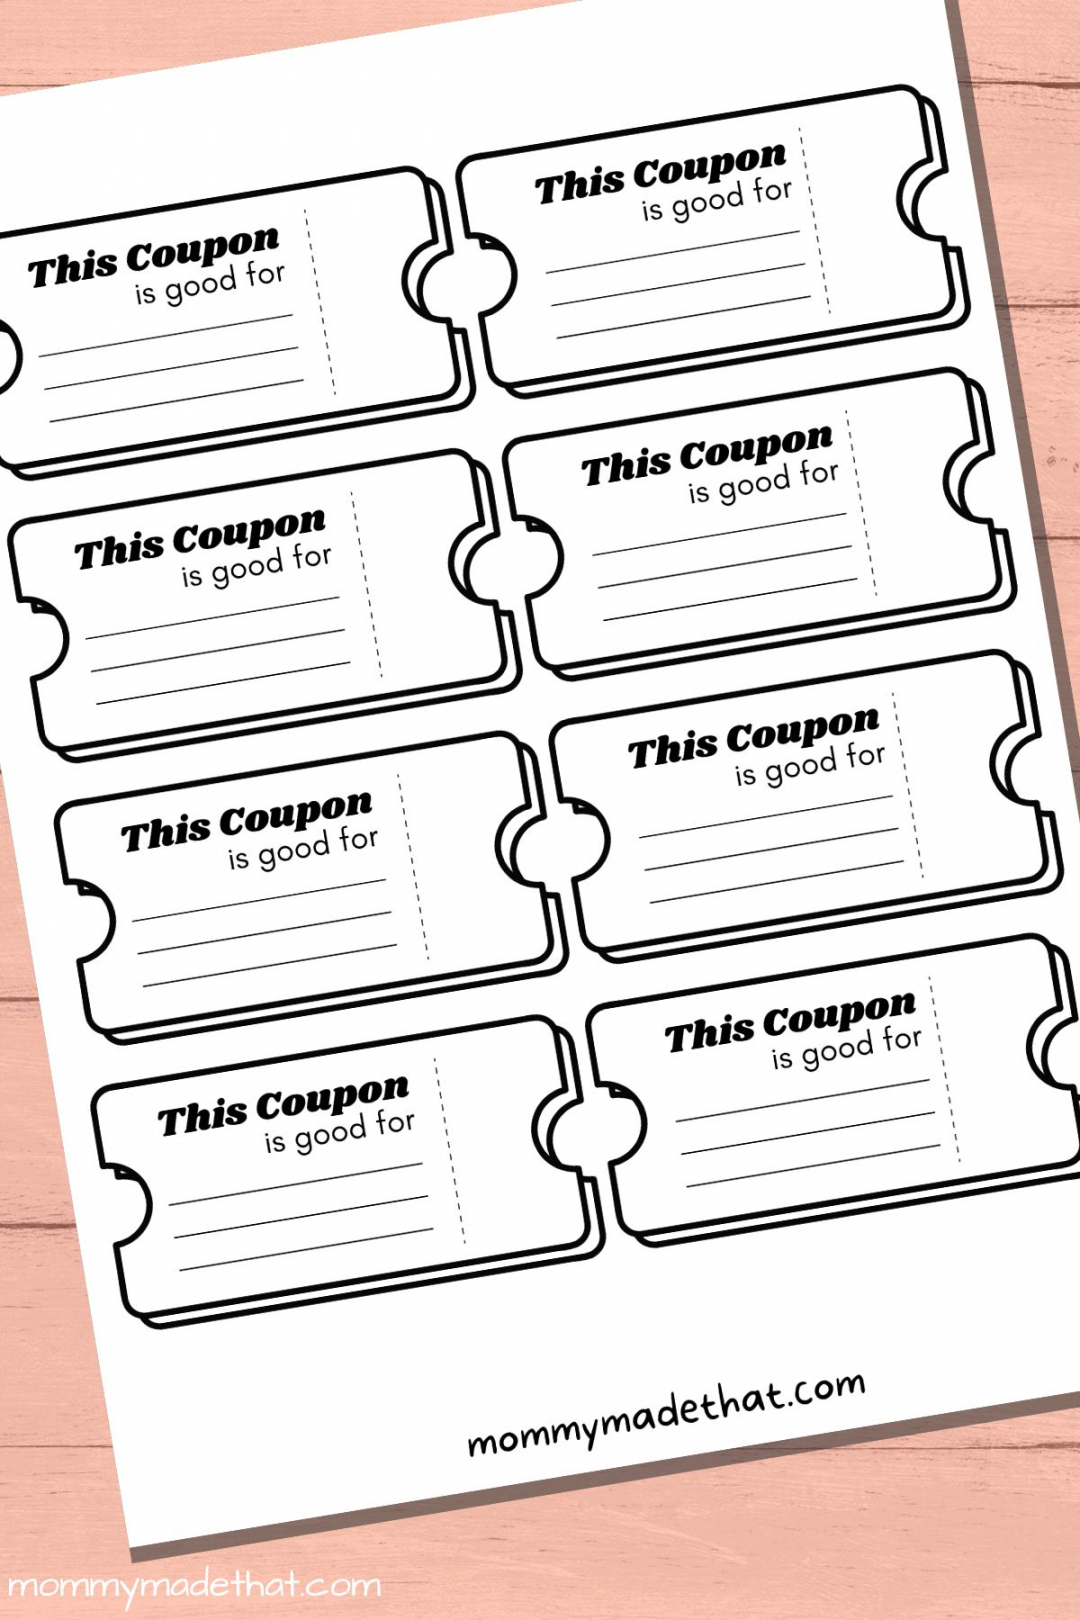 Free Printable Coupon Template - Printable - Lots of Blank Coupon Templates (Free Printables!)